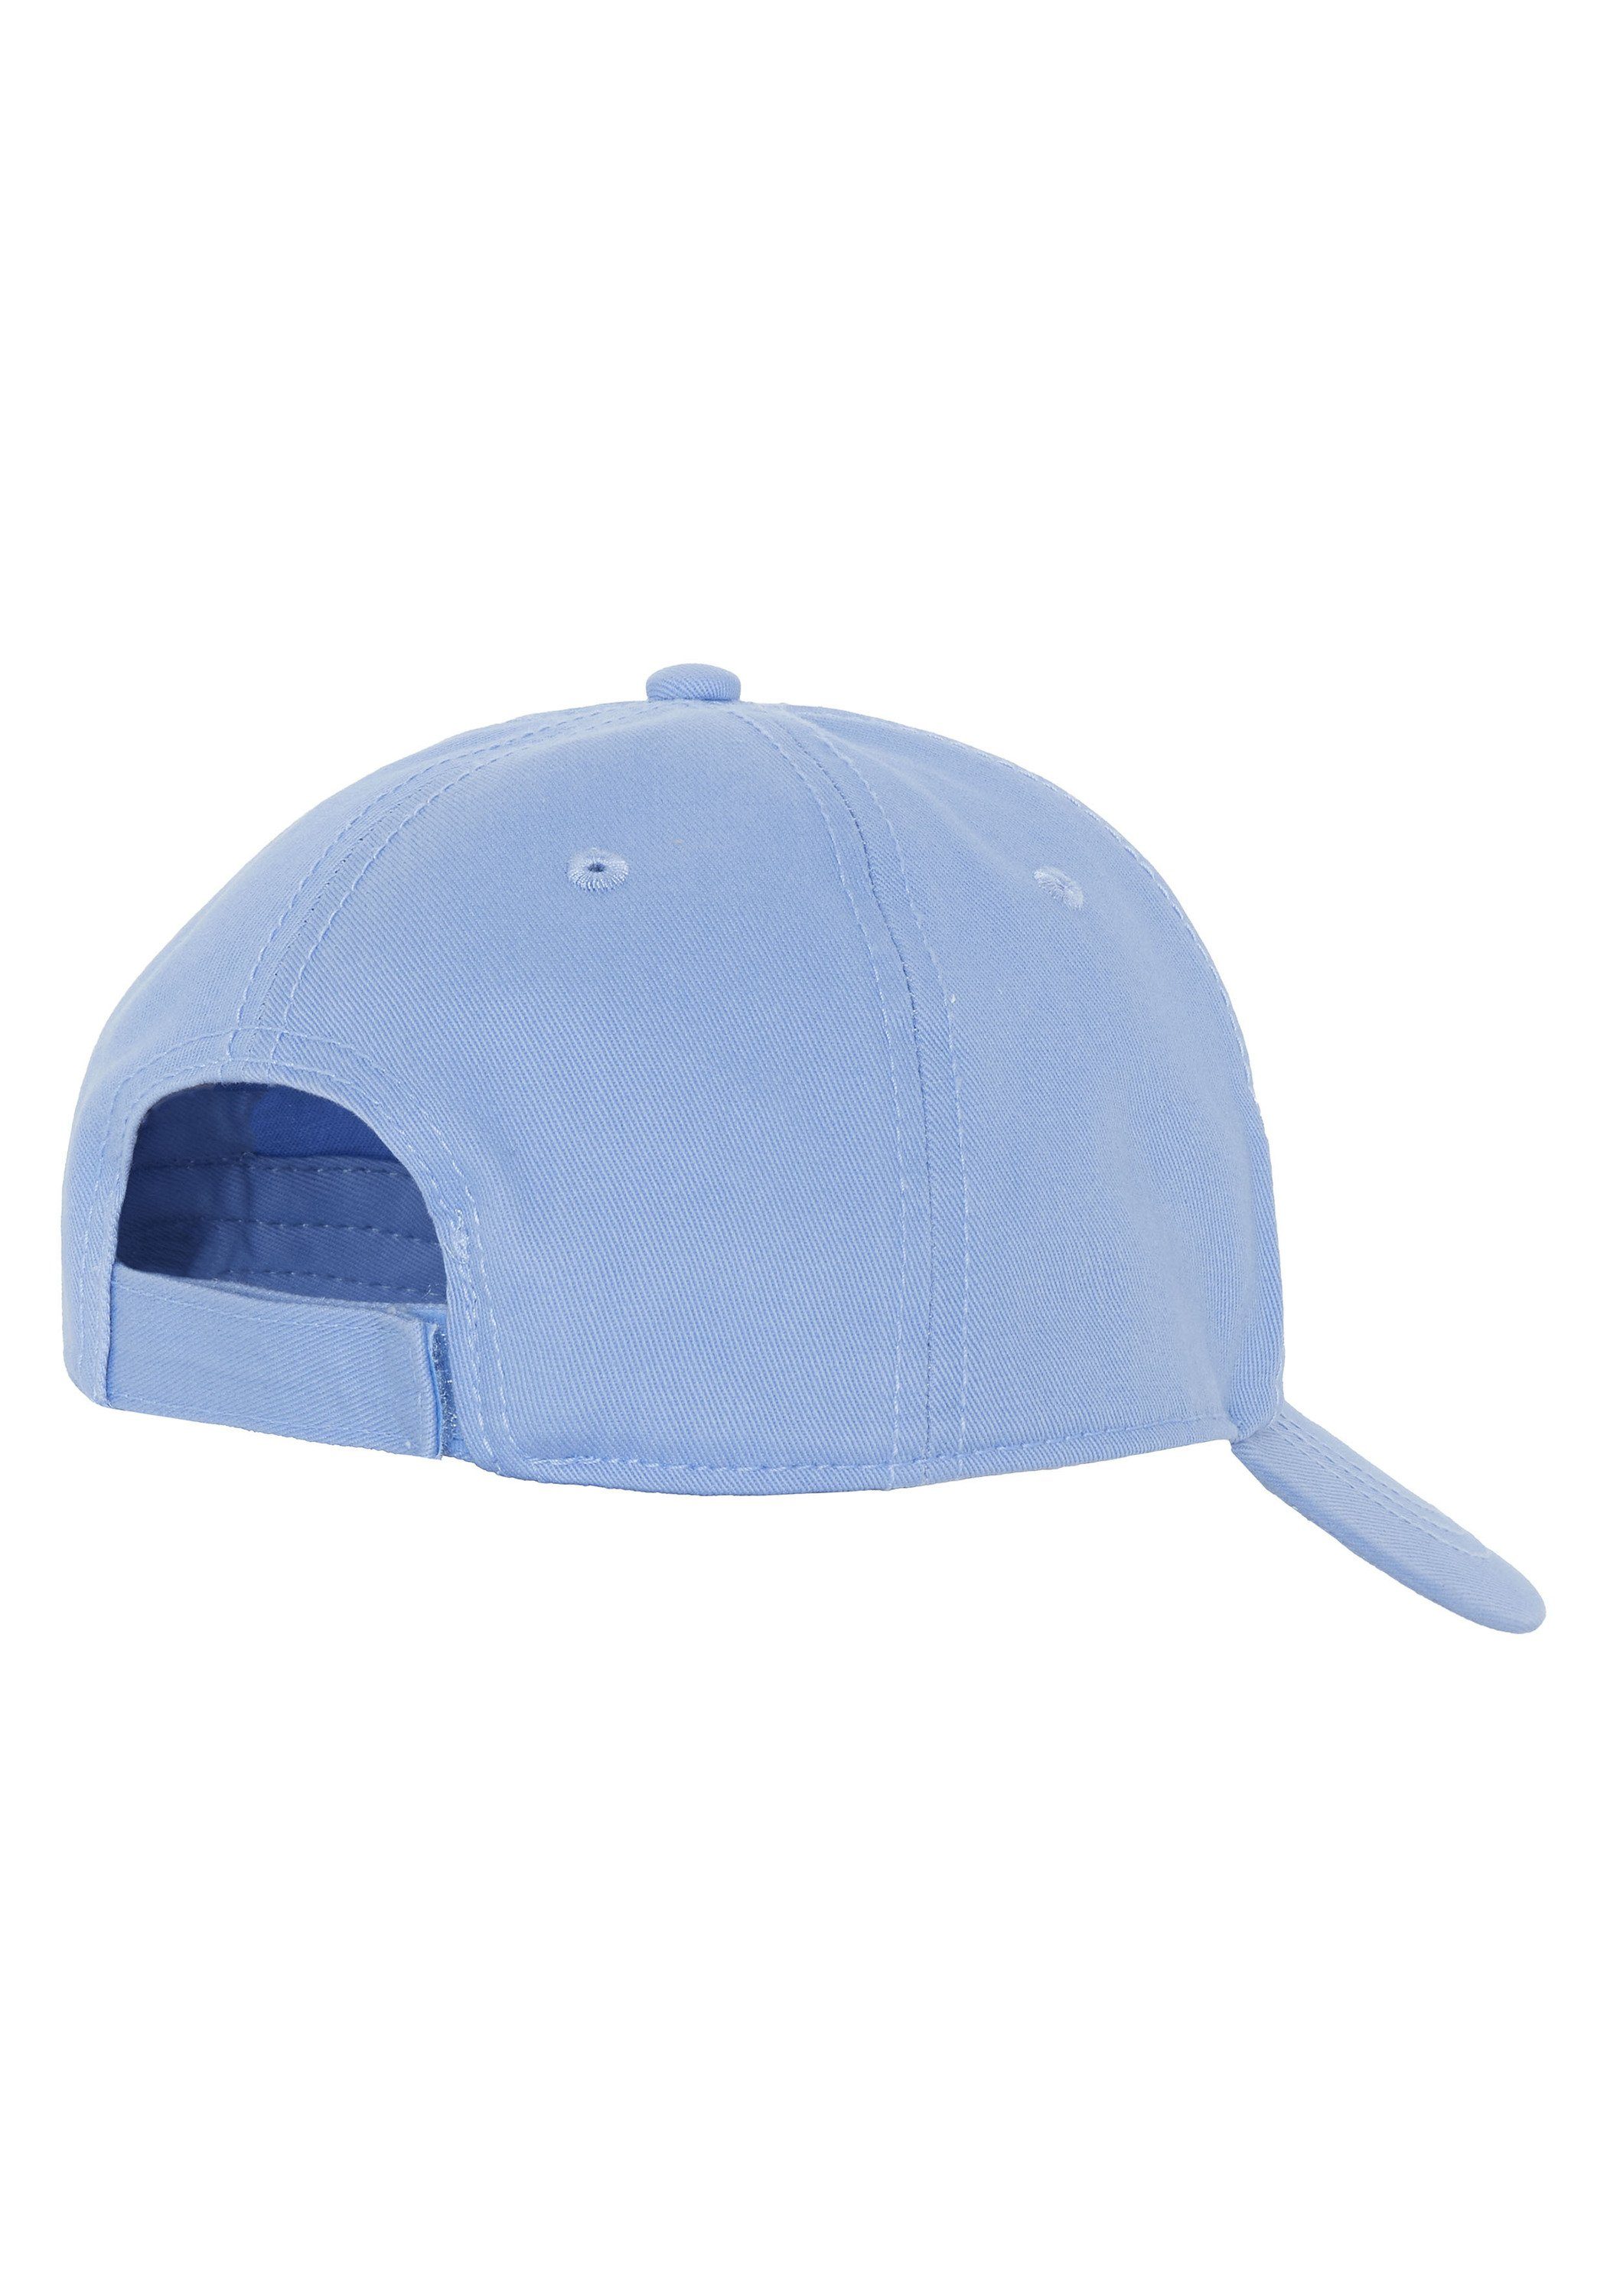 Chiemsee Snapback Cap im Blue Cap aus Air Bel 15-3932 Label-Design Unisex Baumwolle 1